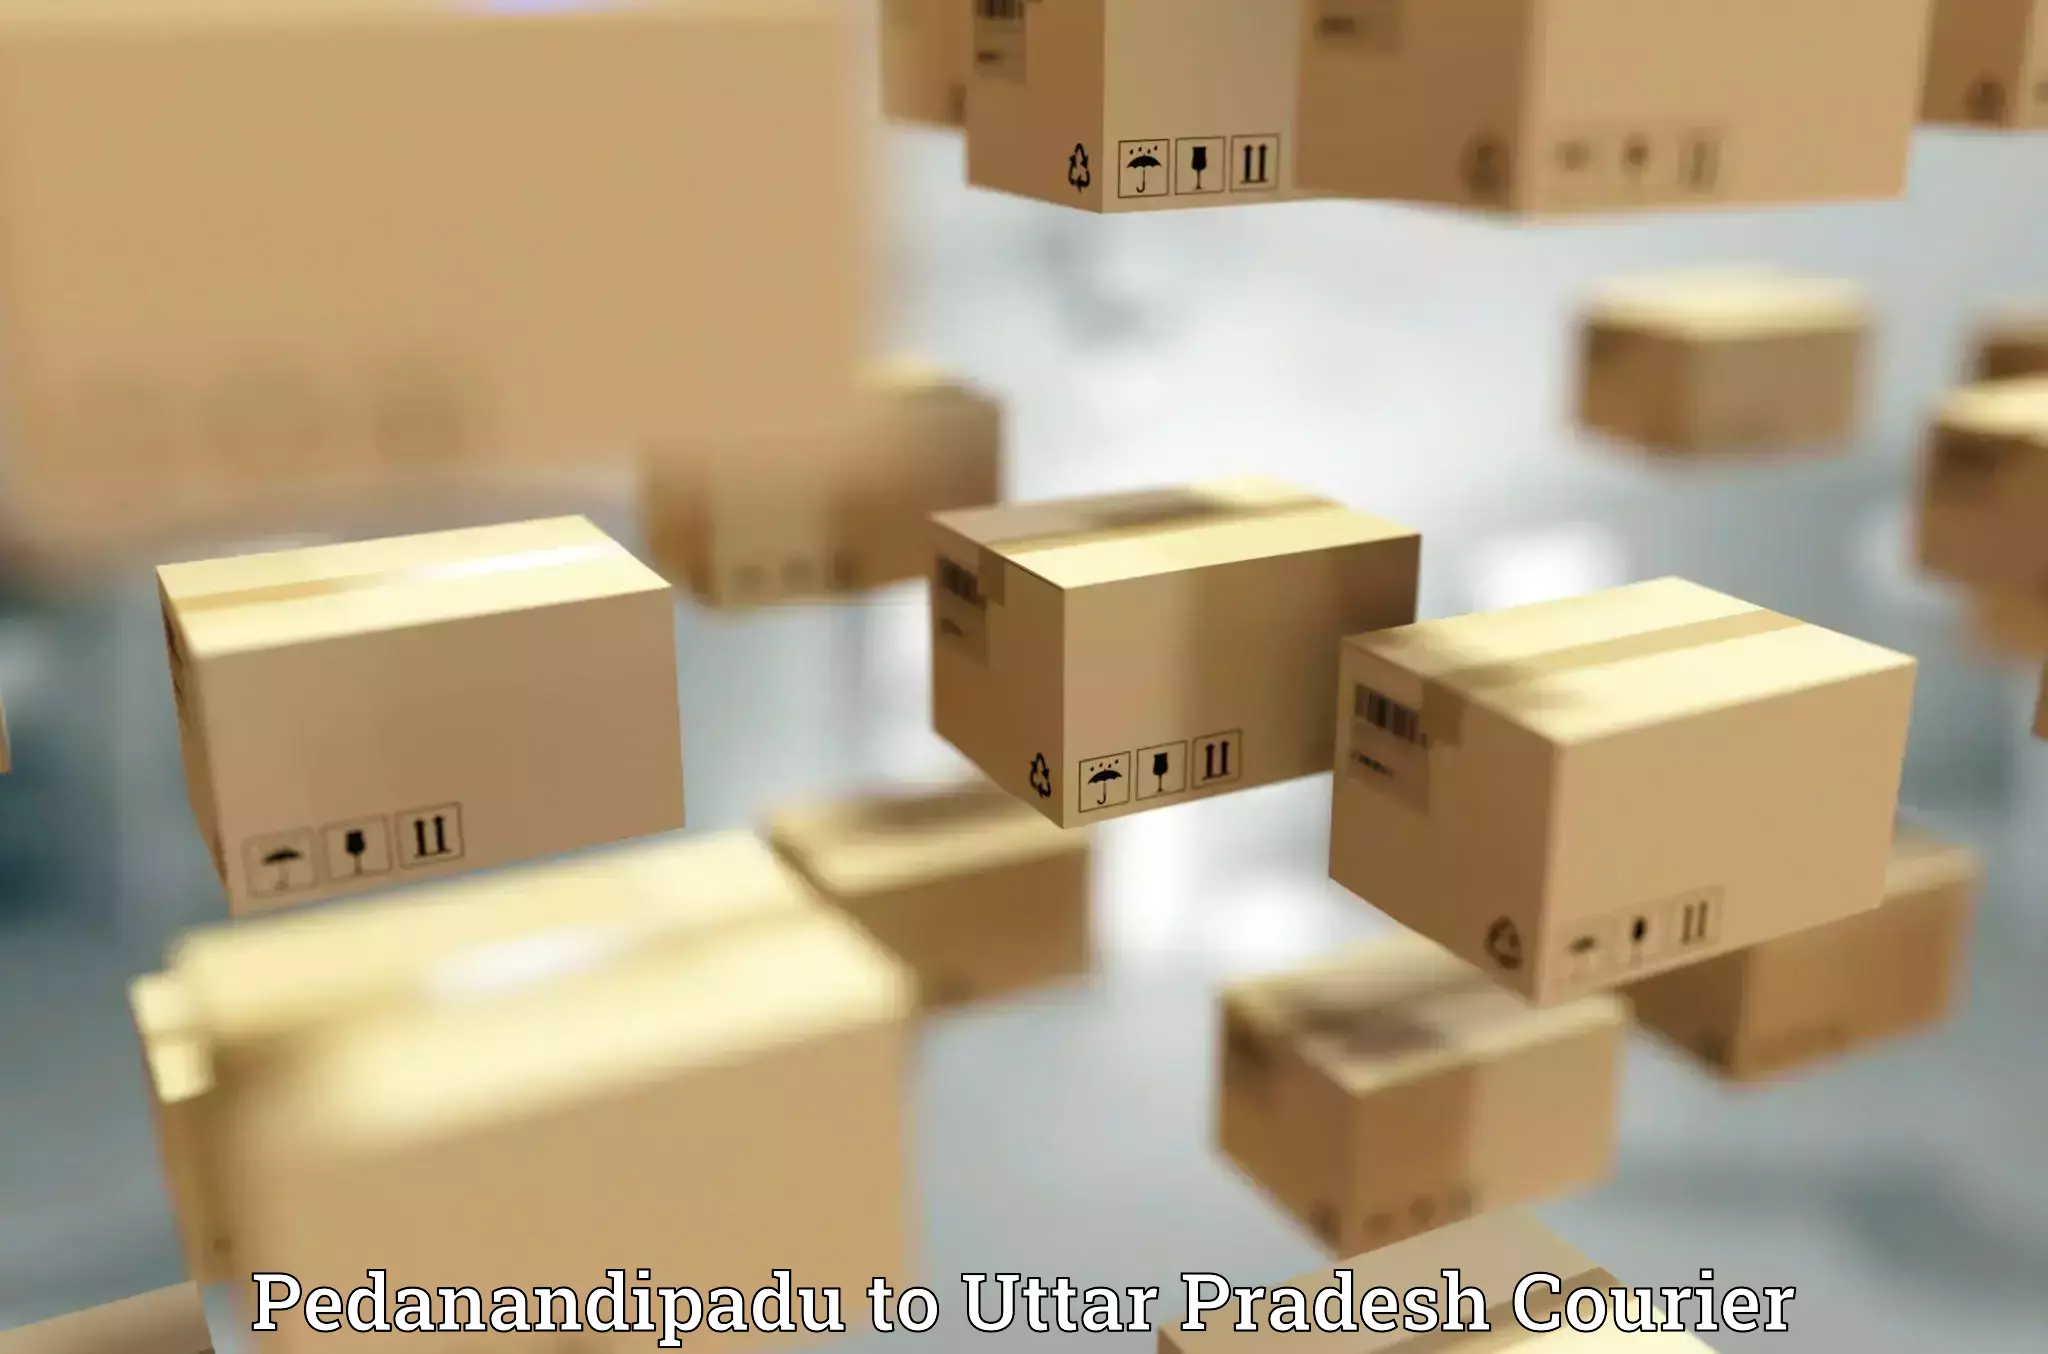 Automated shipping processes in Pedanandipadu to Budaun